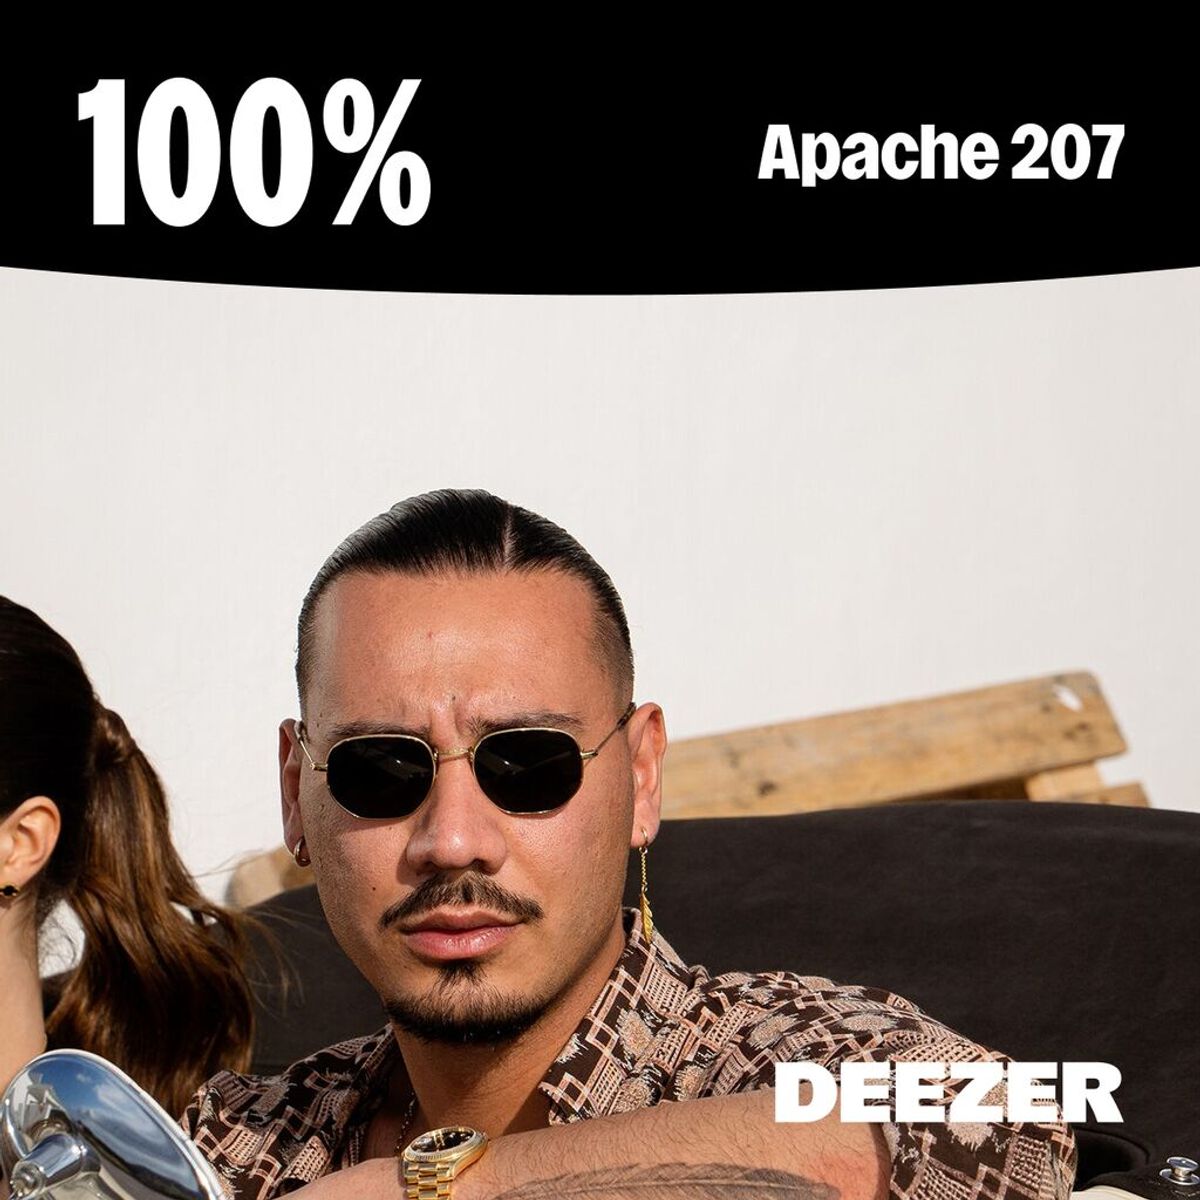 Apache 207: Die Playlist mit allen Hits streamen